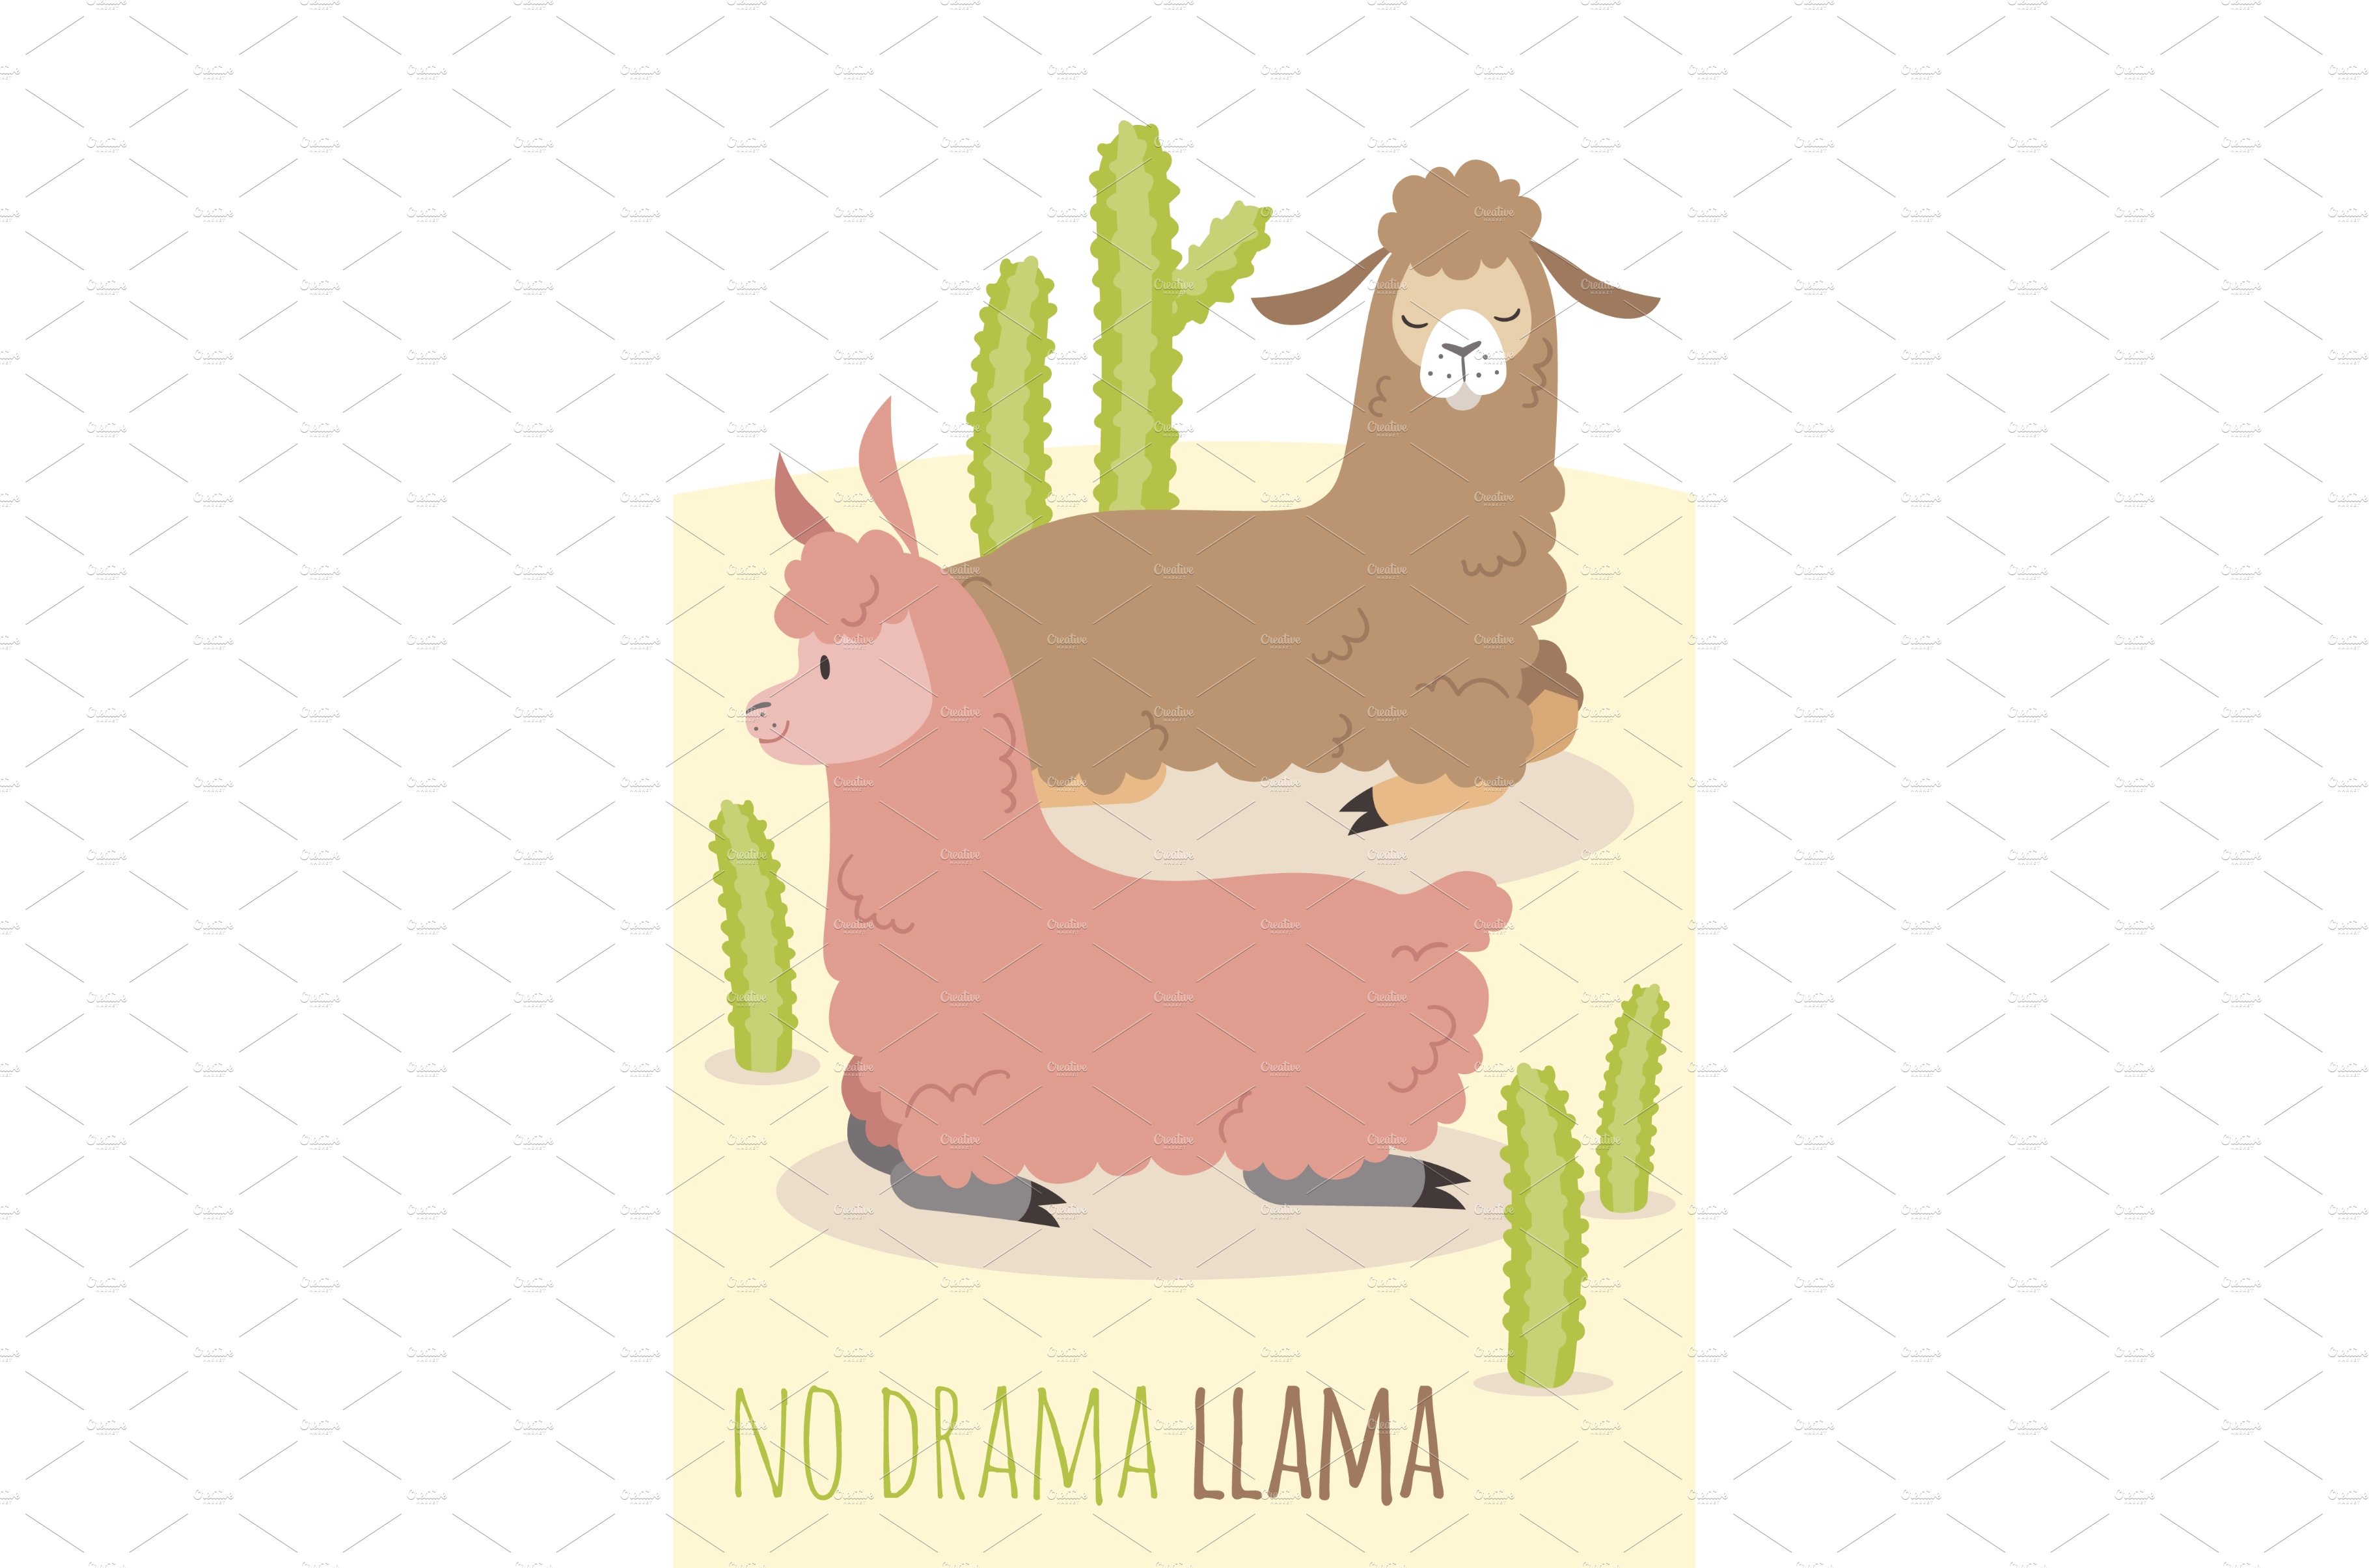 No drama llama card. Relaxing alpaca cover image.